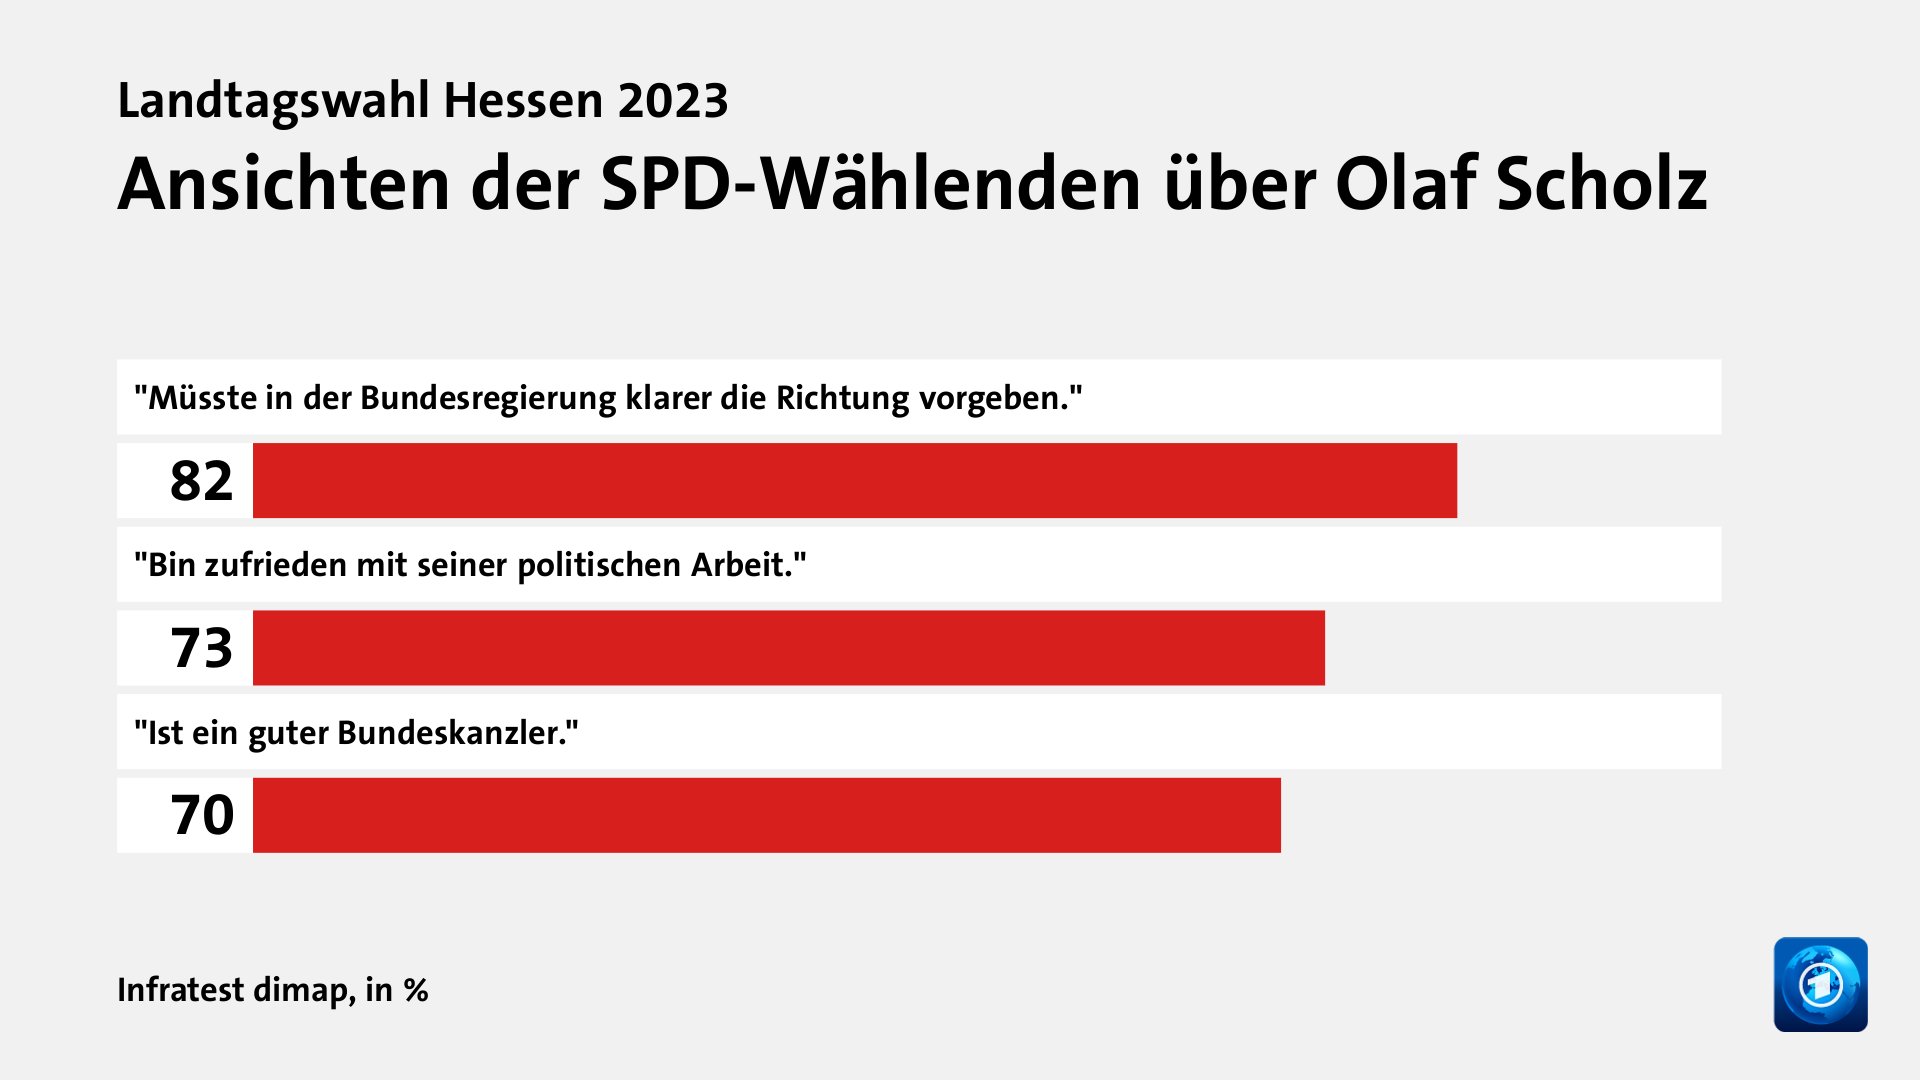 Ansichten der SPD-Wählenden über Olaf Scholz, in %: 